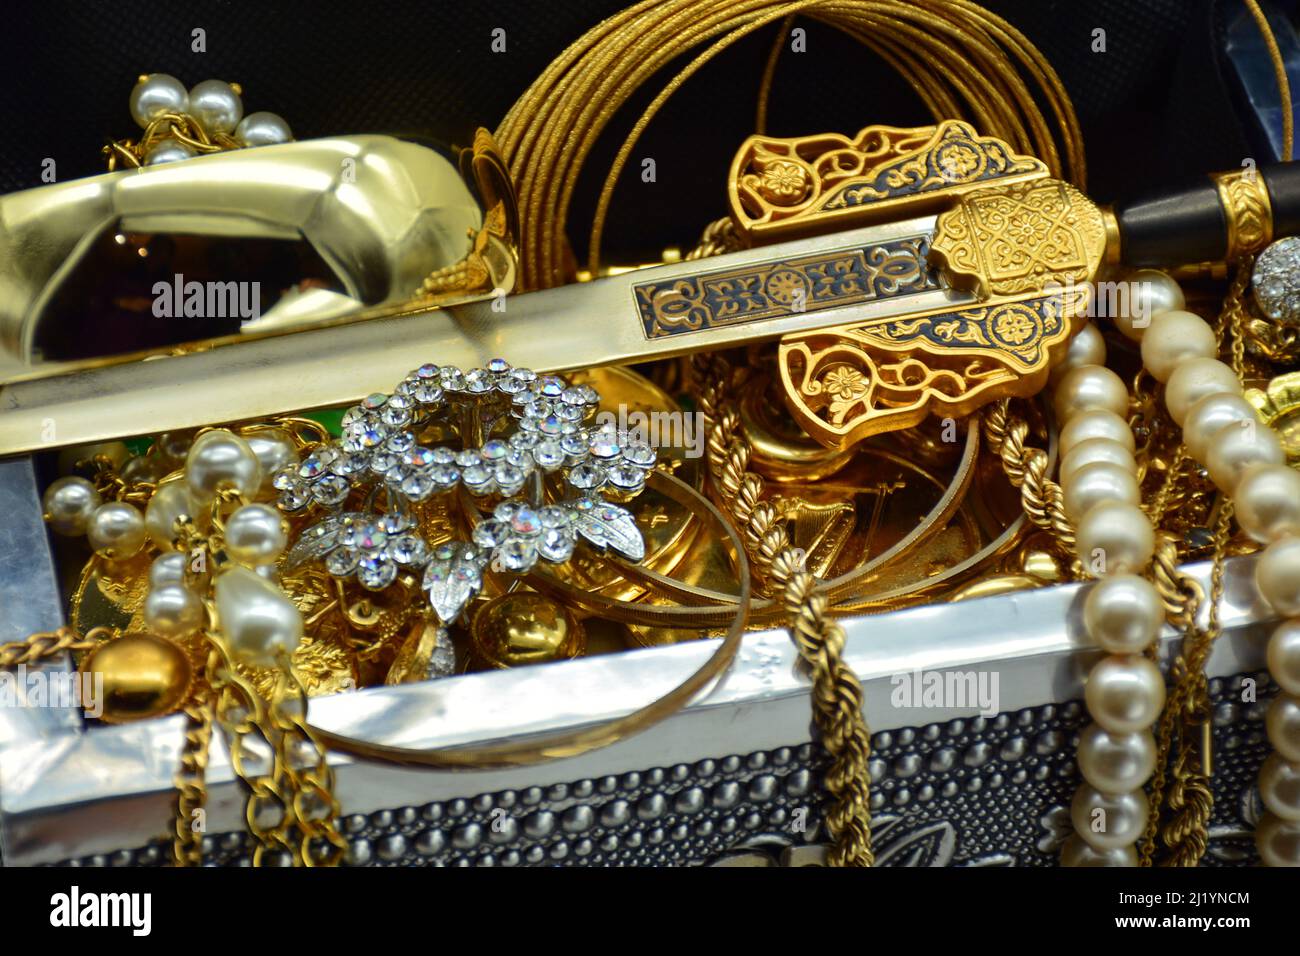 Un tesoro, cofre leno de joyas, perlas, y oro, sobre fondo blanco Foto Stock